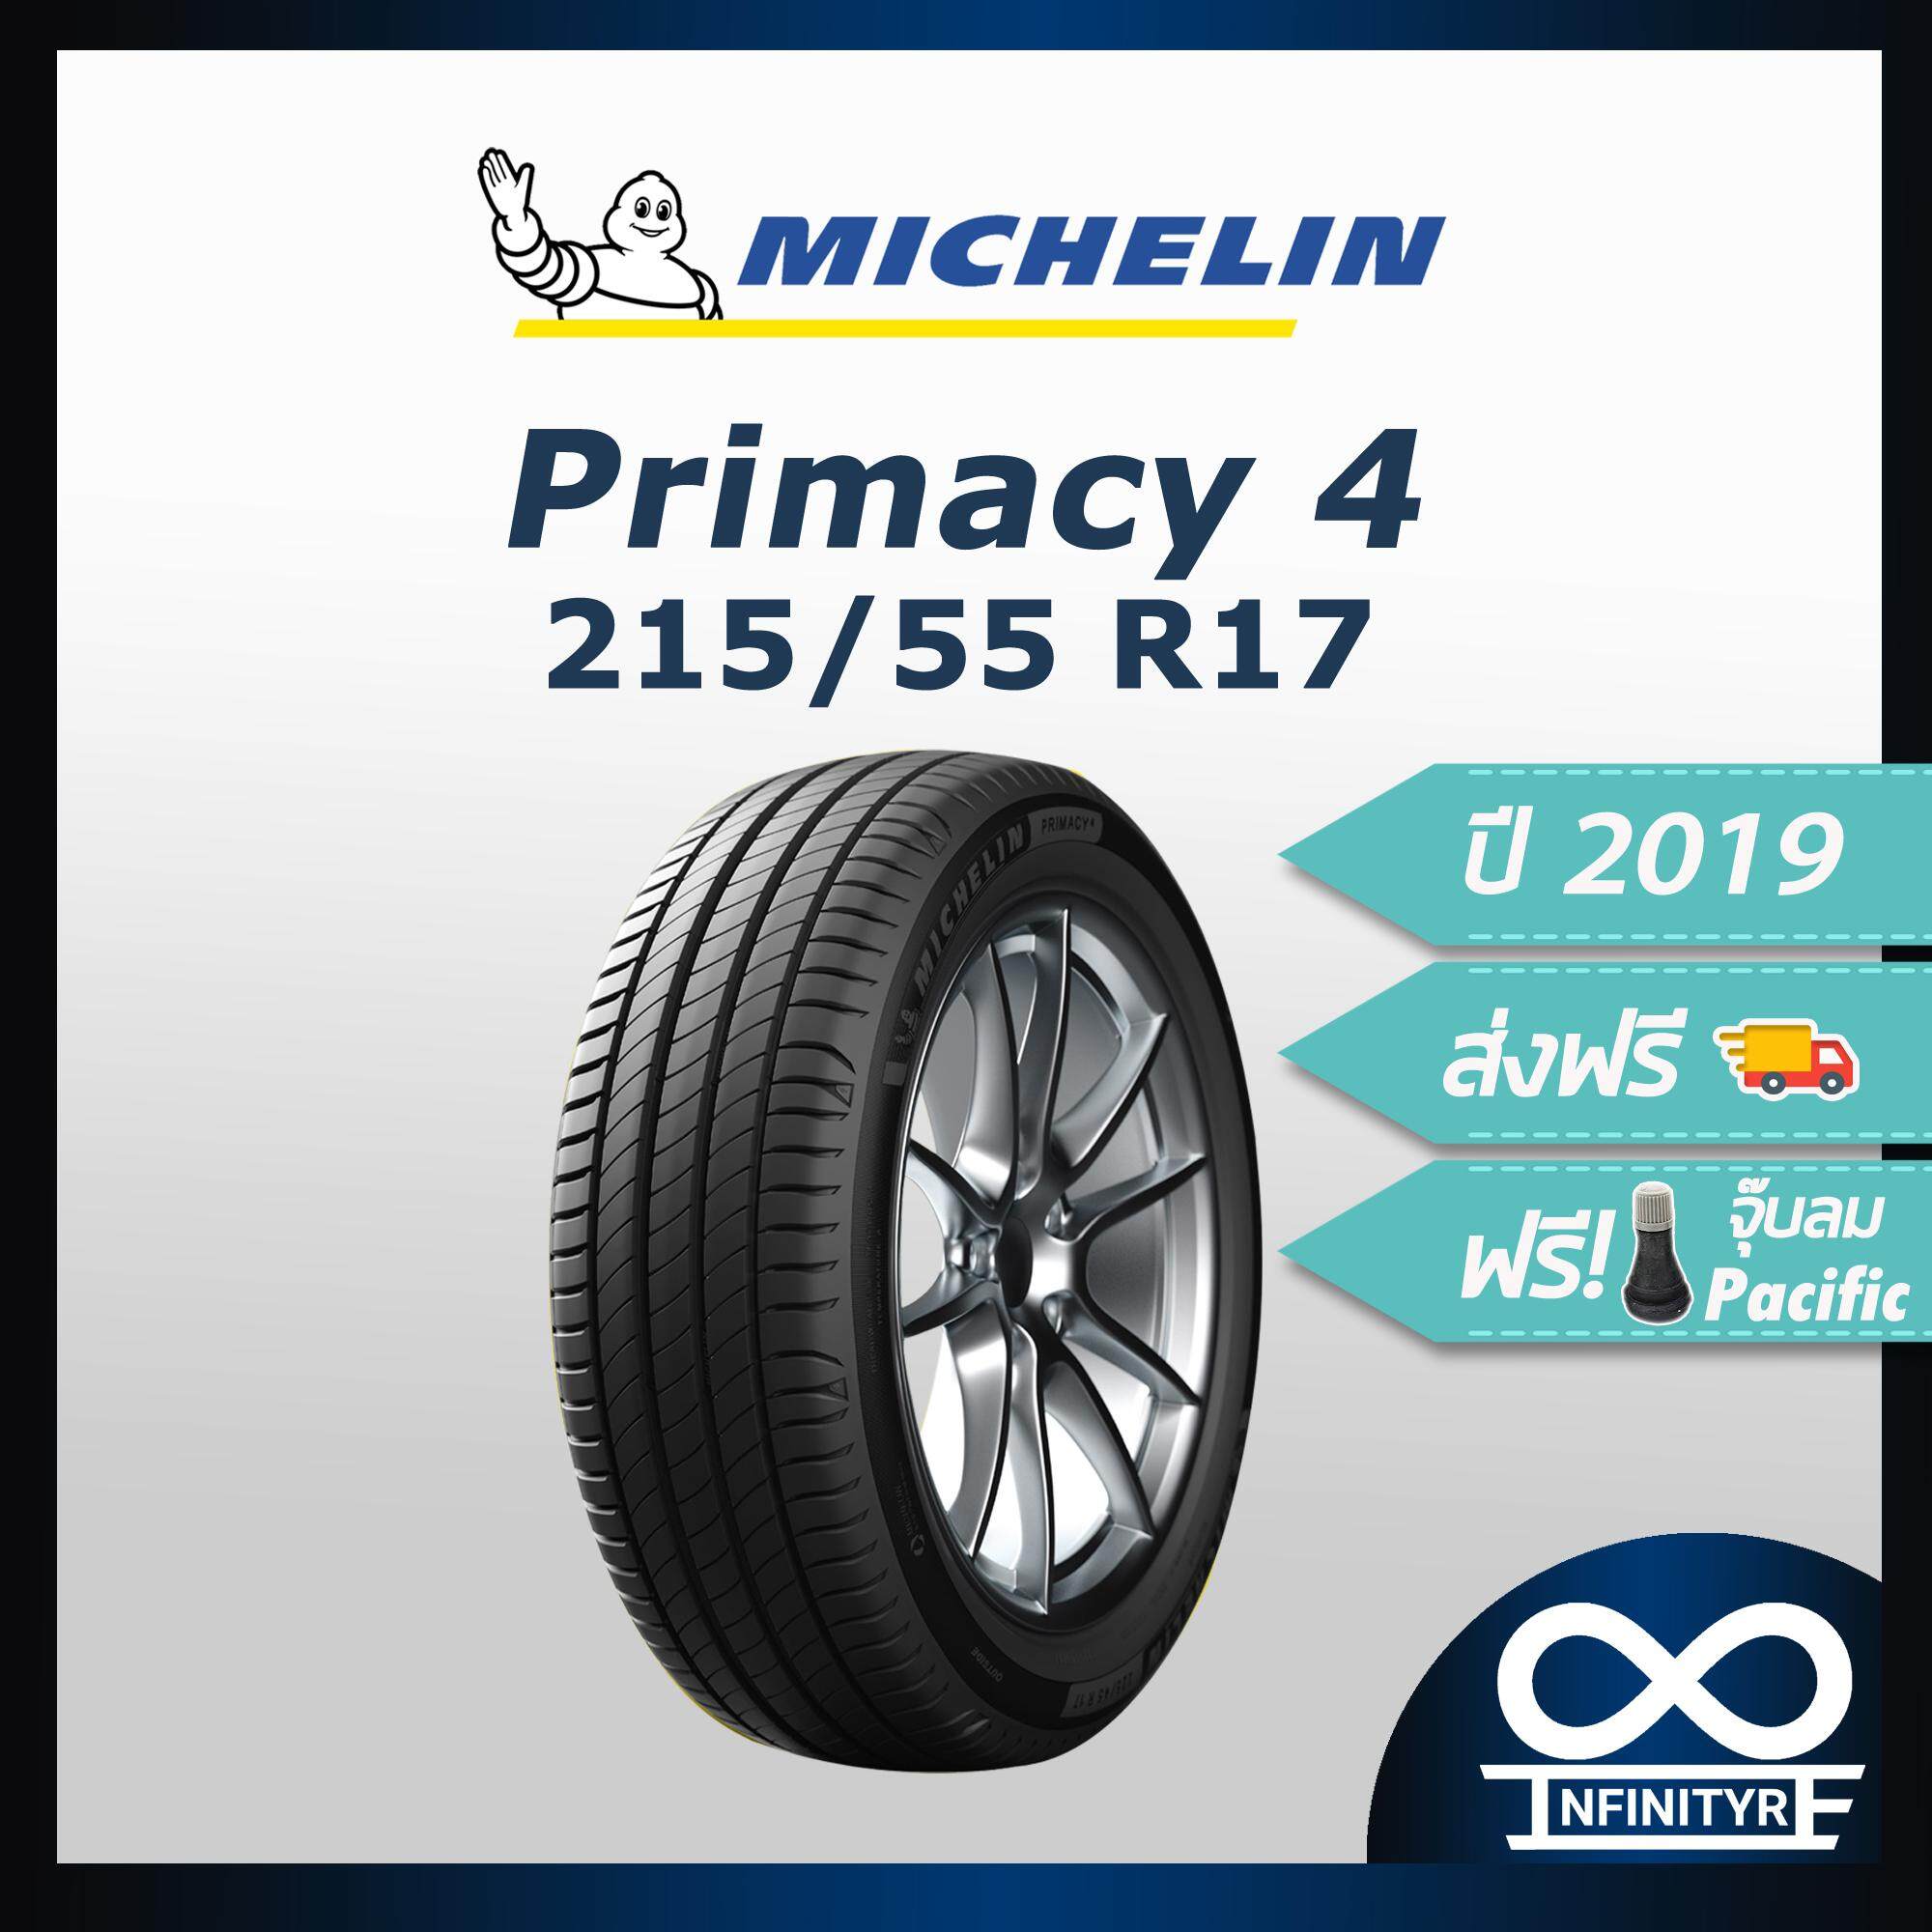 ประกันภัย รถยนต์ 2+ เชียงใหม่ 215/55R17 Michelin มิชลิน รุ่น Primacy 4 (ปี2019) ฟรี! จุ๊บลมPacific เกรดพรีเมี่ยม